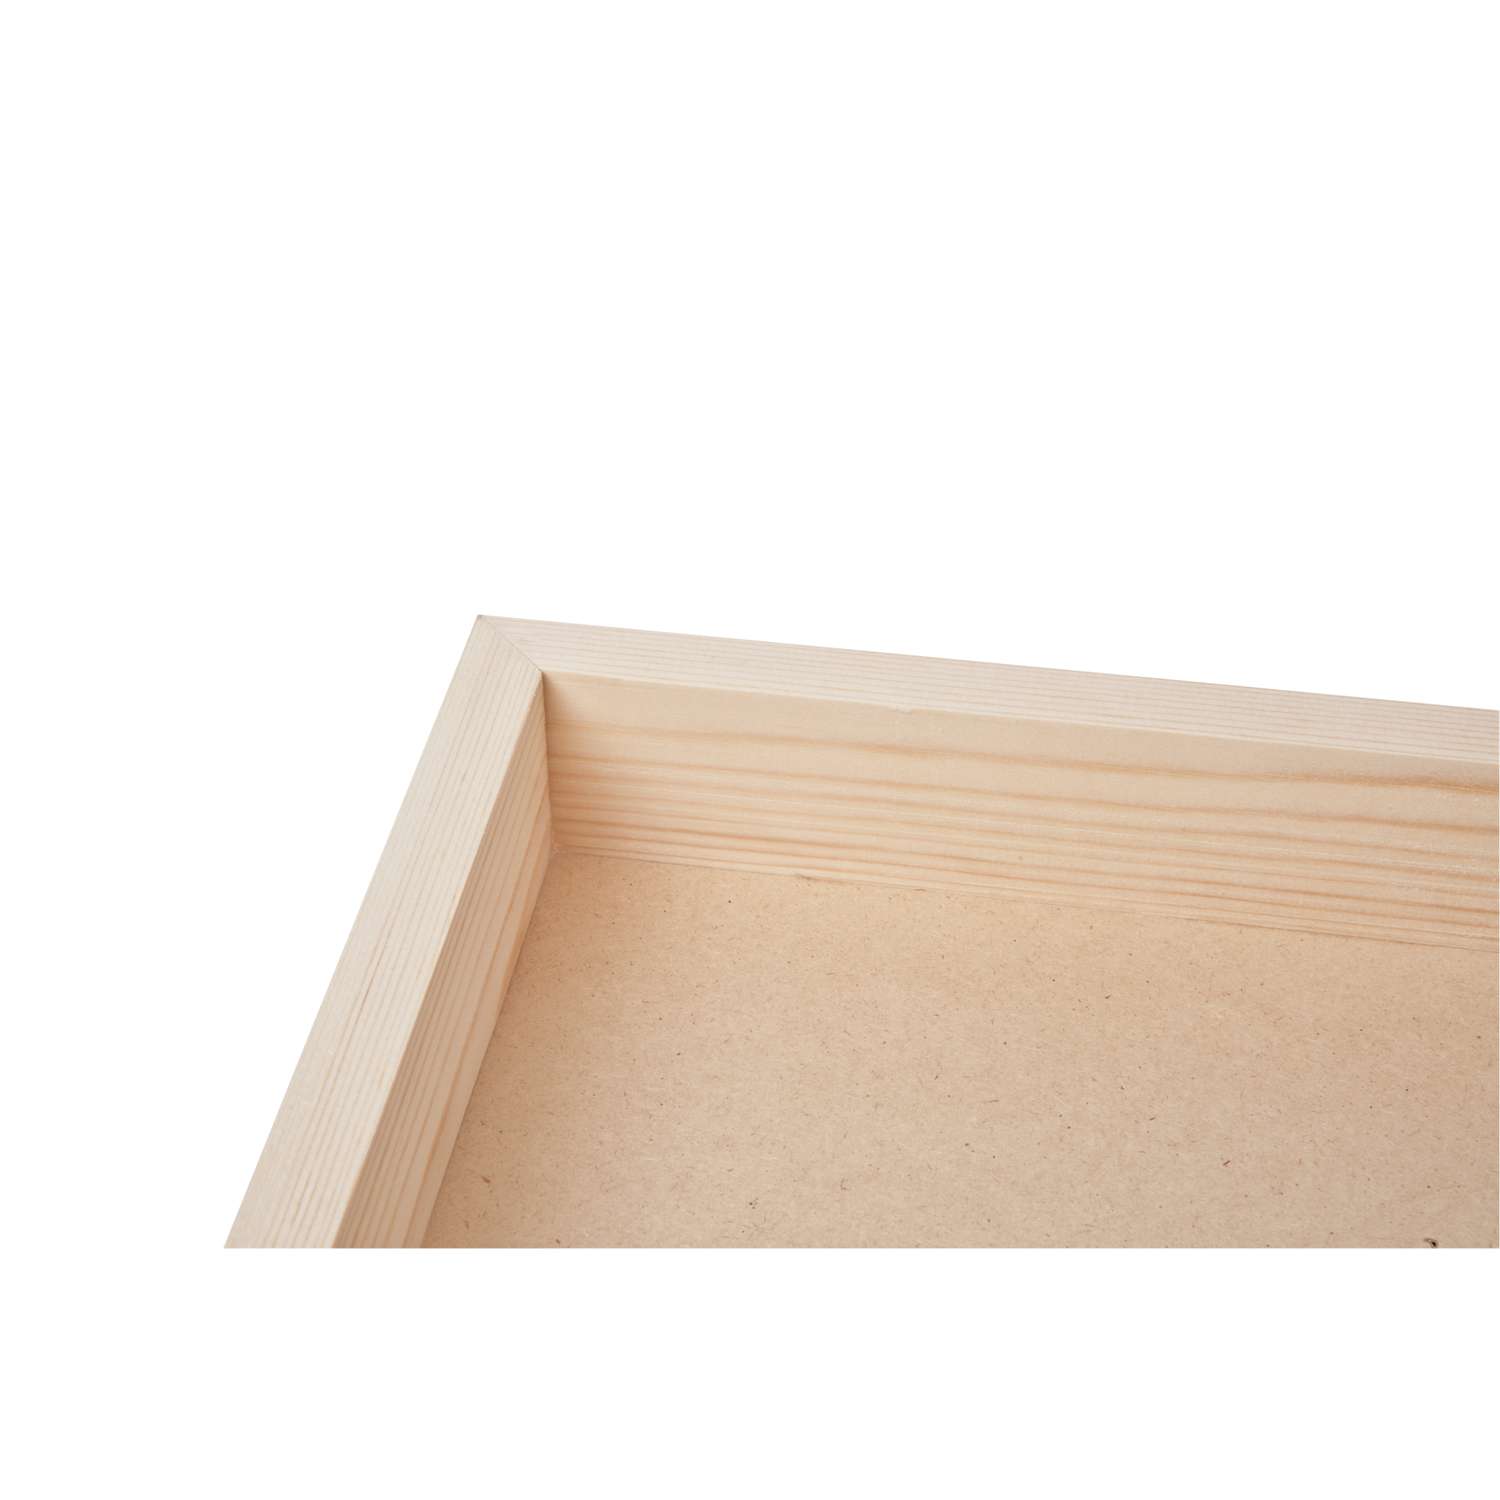 20 cm x 10 cm Packs en bois plaques 4 mm MDF Plain Blanc Carré Bord Trous/pas de trous